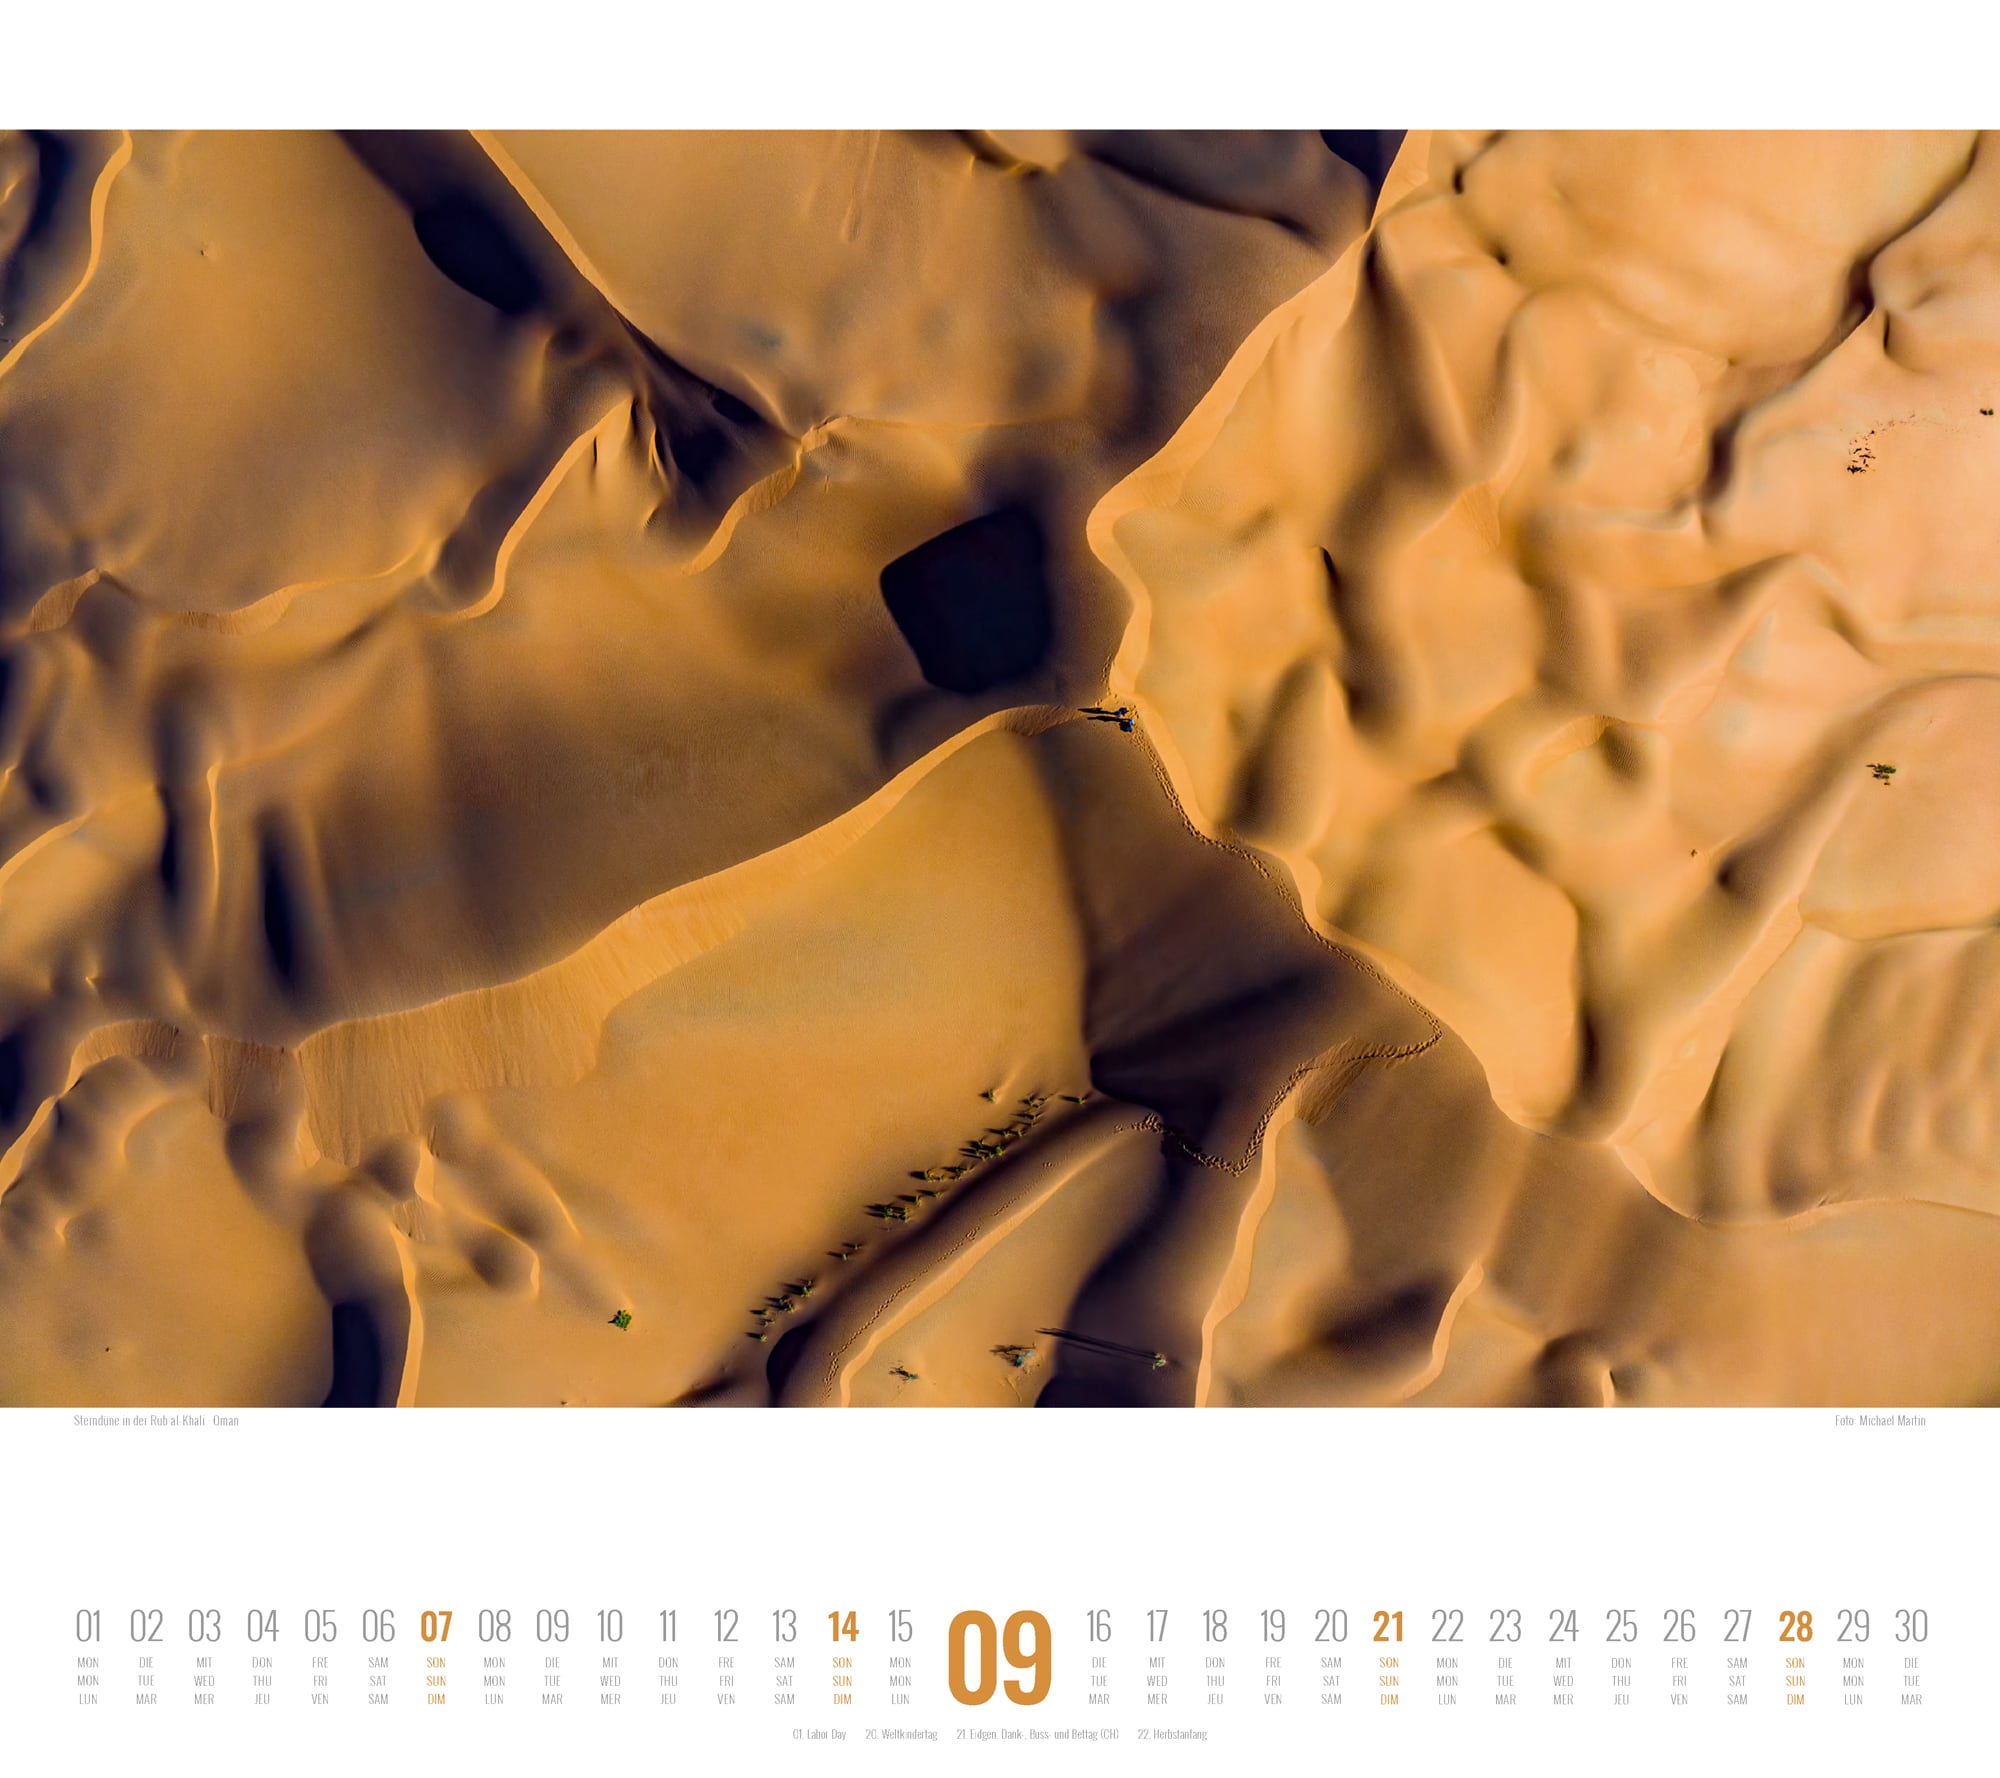 Ackermann Calendar Structures - Michael Martin 2025 - Inside View 09